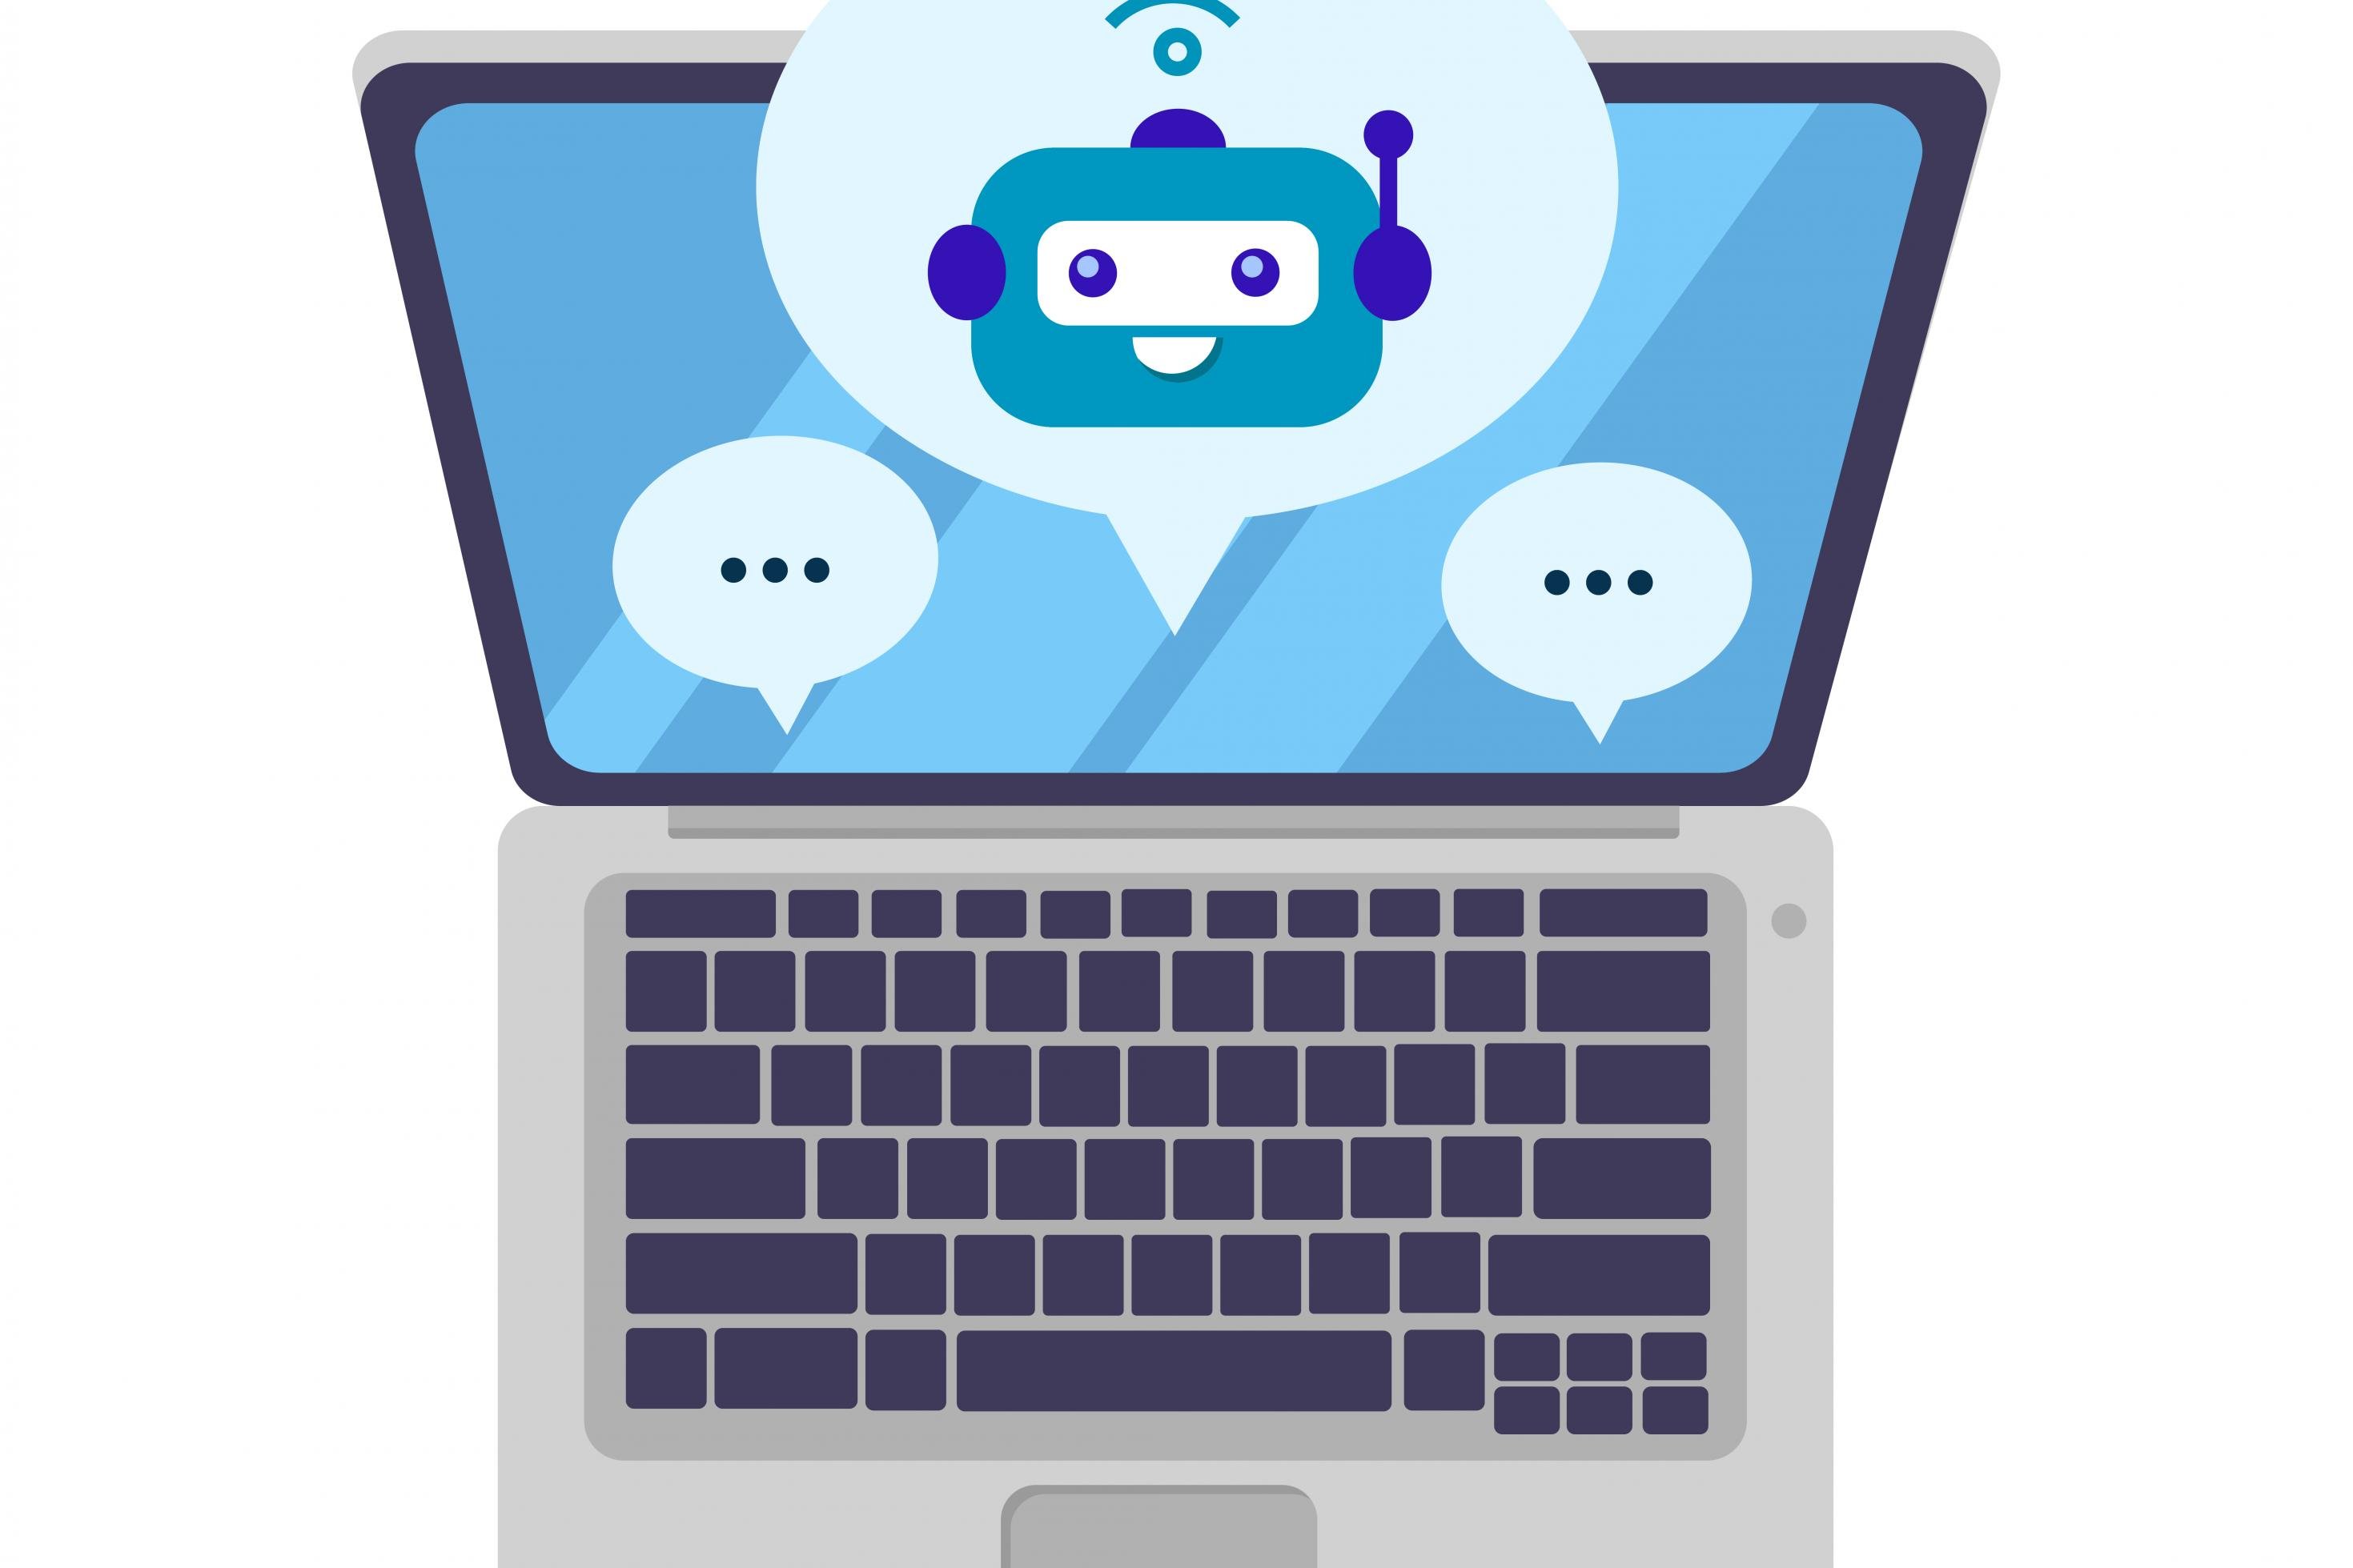 Comic-Bild eines Laptops, auf dem drei Sprechblasen abgebildet sind. In einer der Sprechblasen sieht man den Kopf eines Roboters.